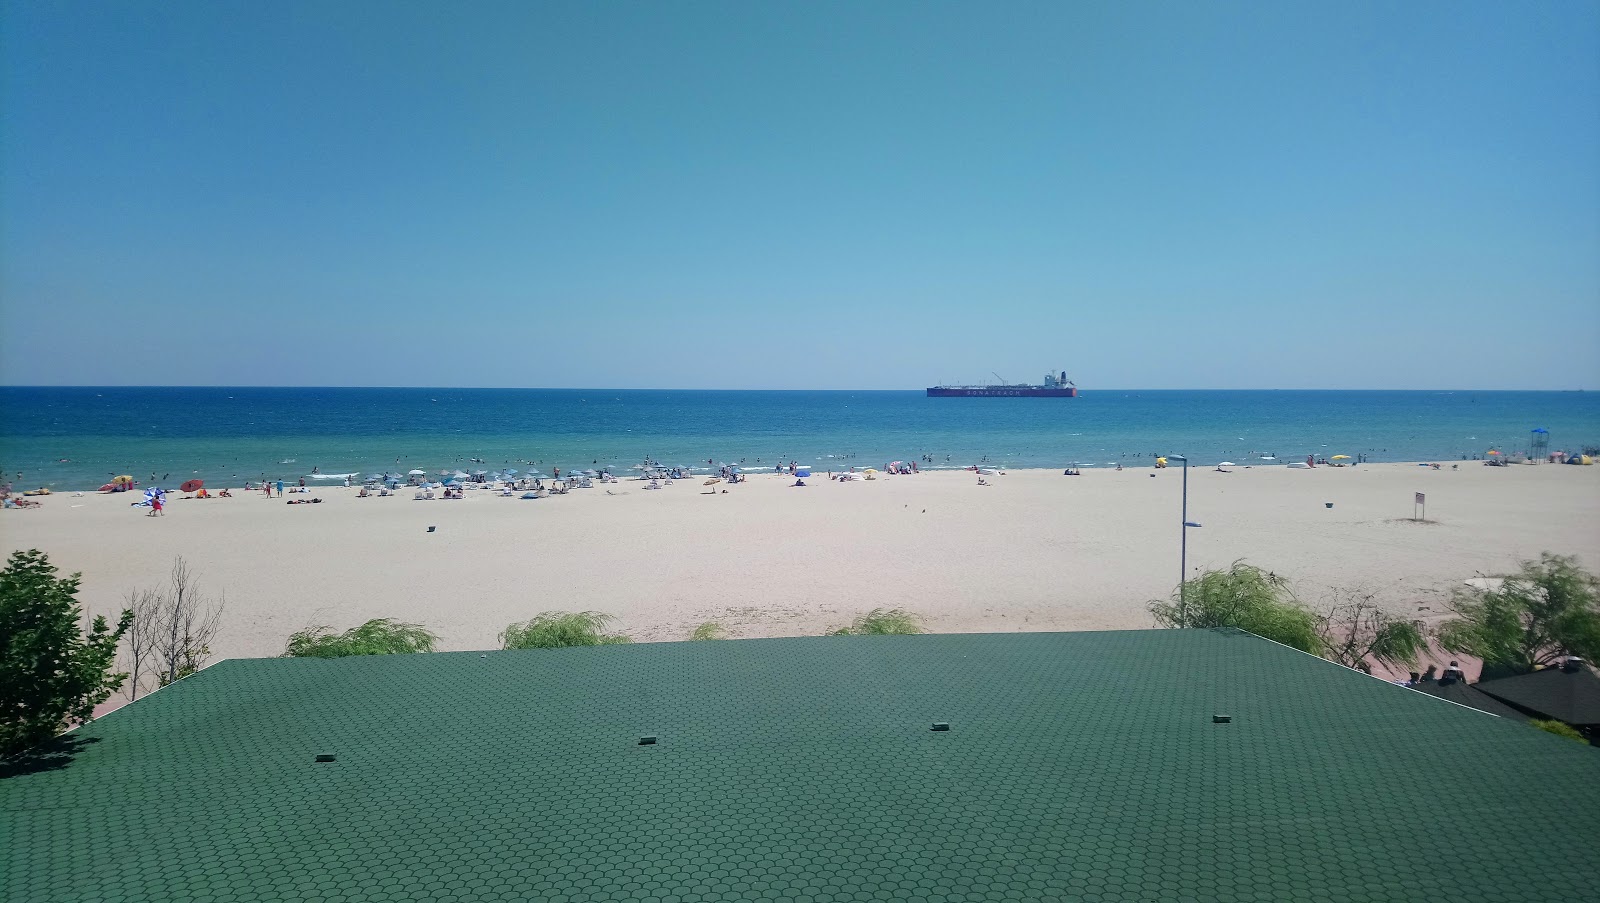 Fotografie cu Sultankoy beach - locul popular printre cunoscătorii de relaxare